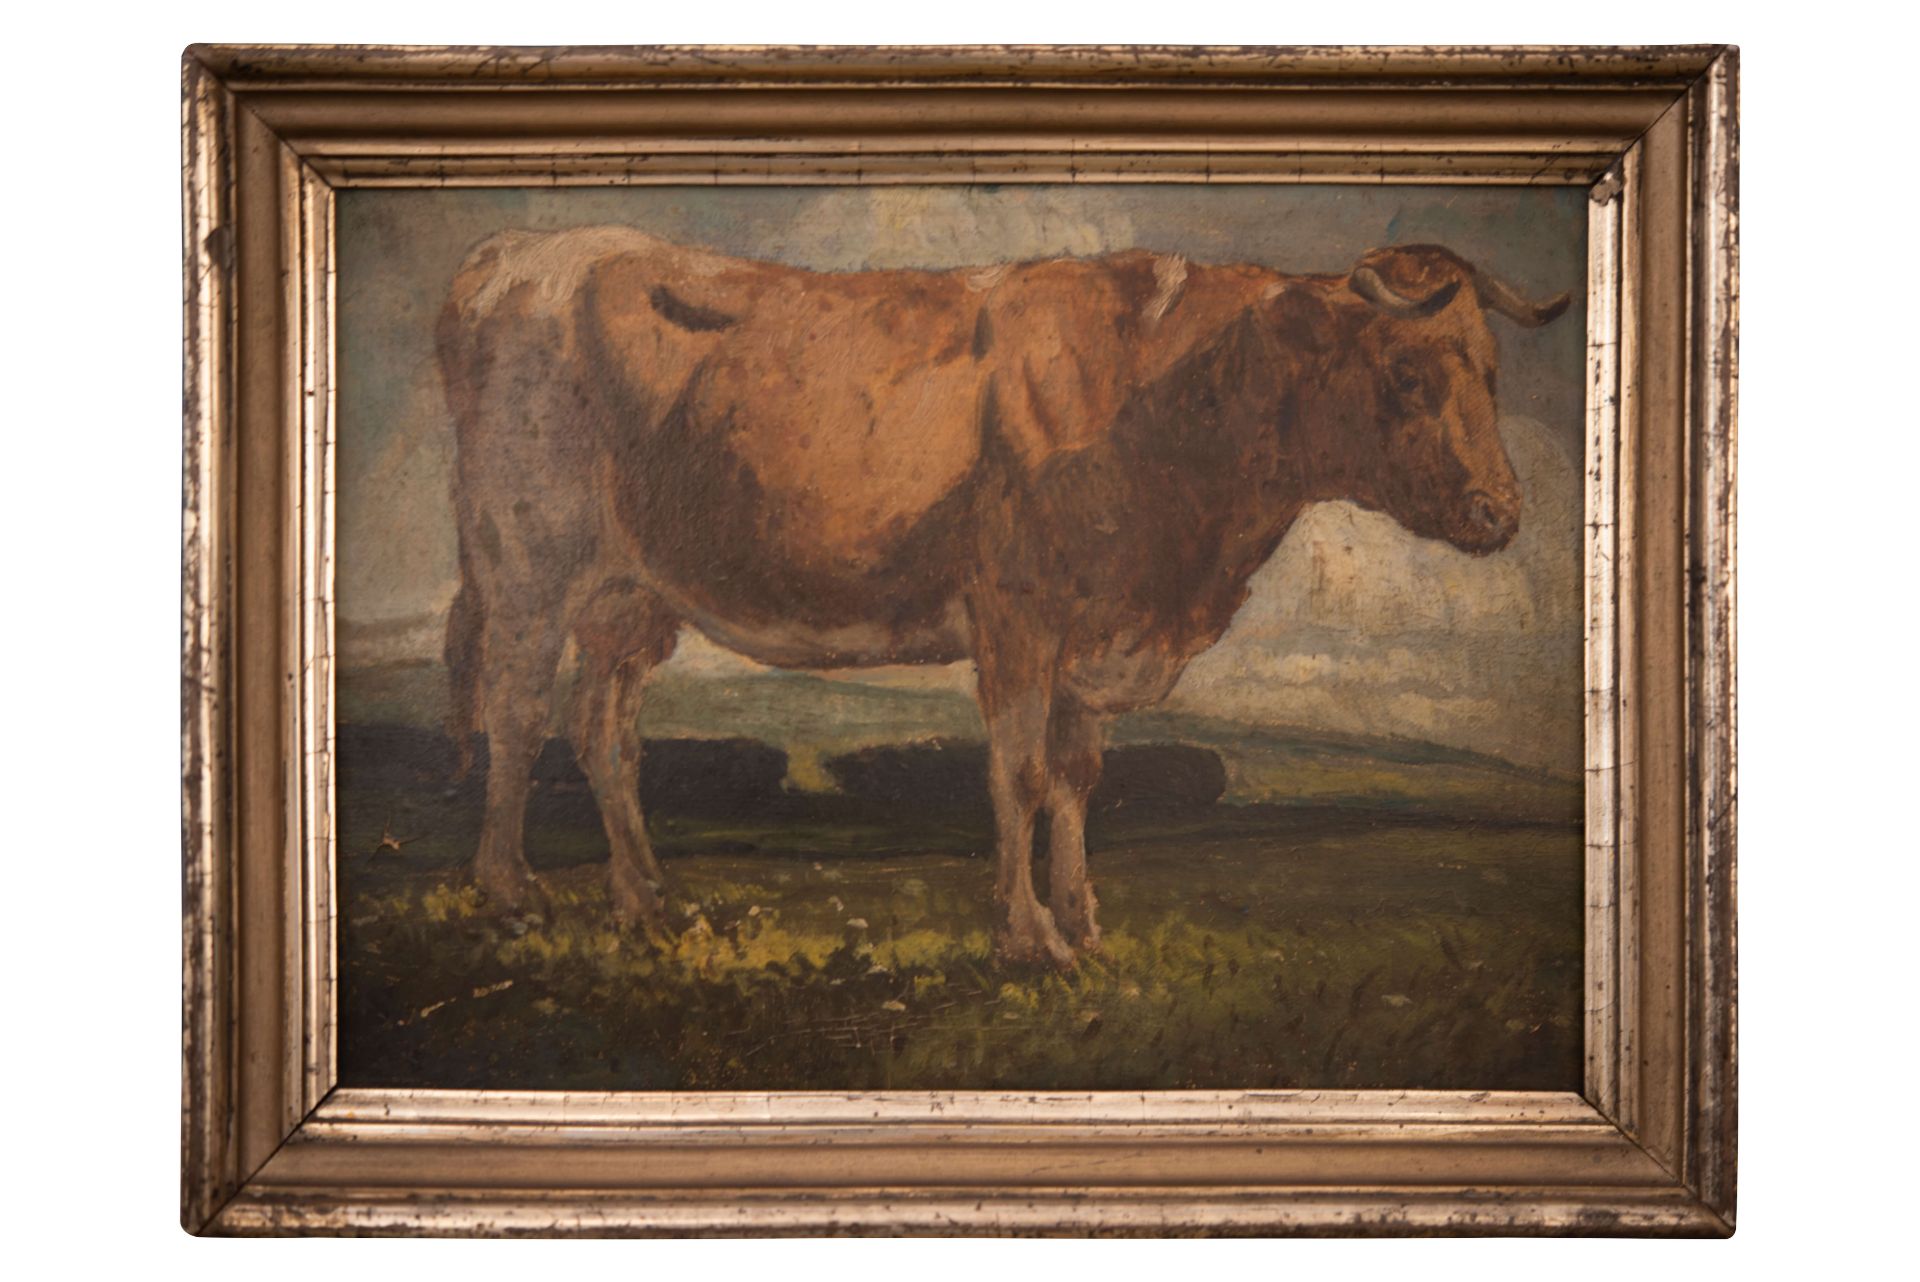 Anton Schrödel Weidendes Vieh |Anton Schrödel Grazing Cattle